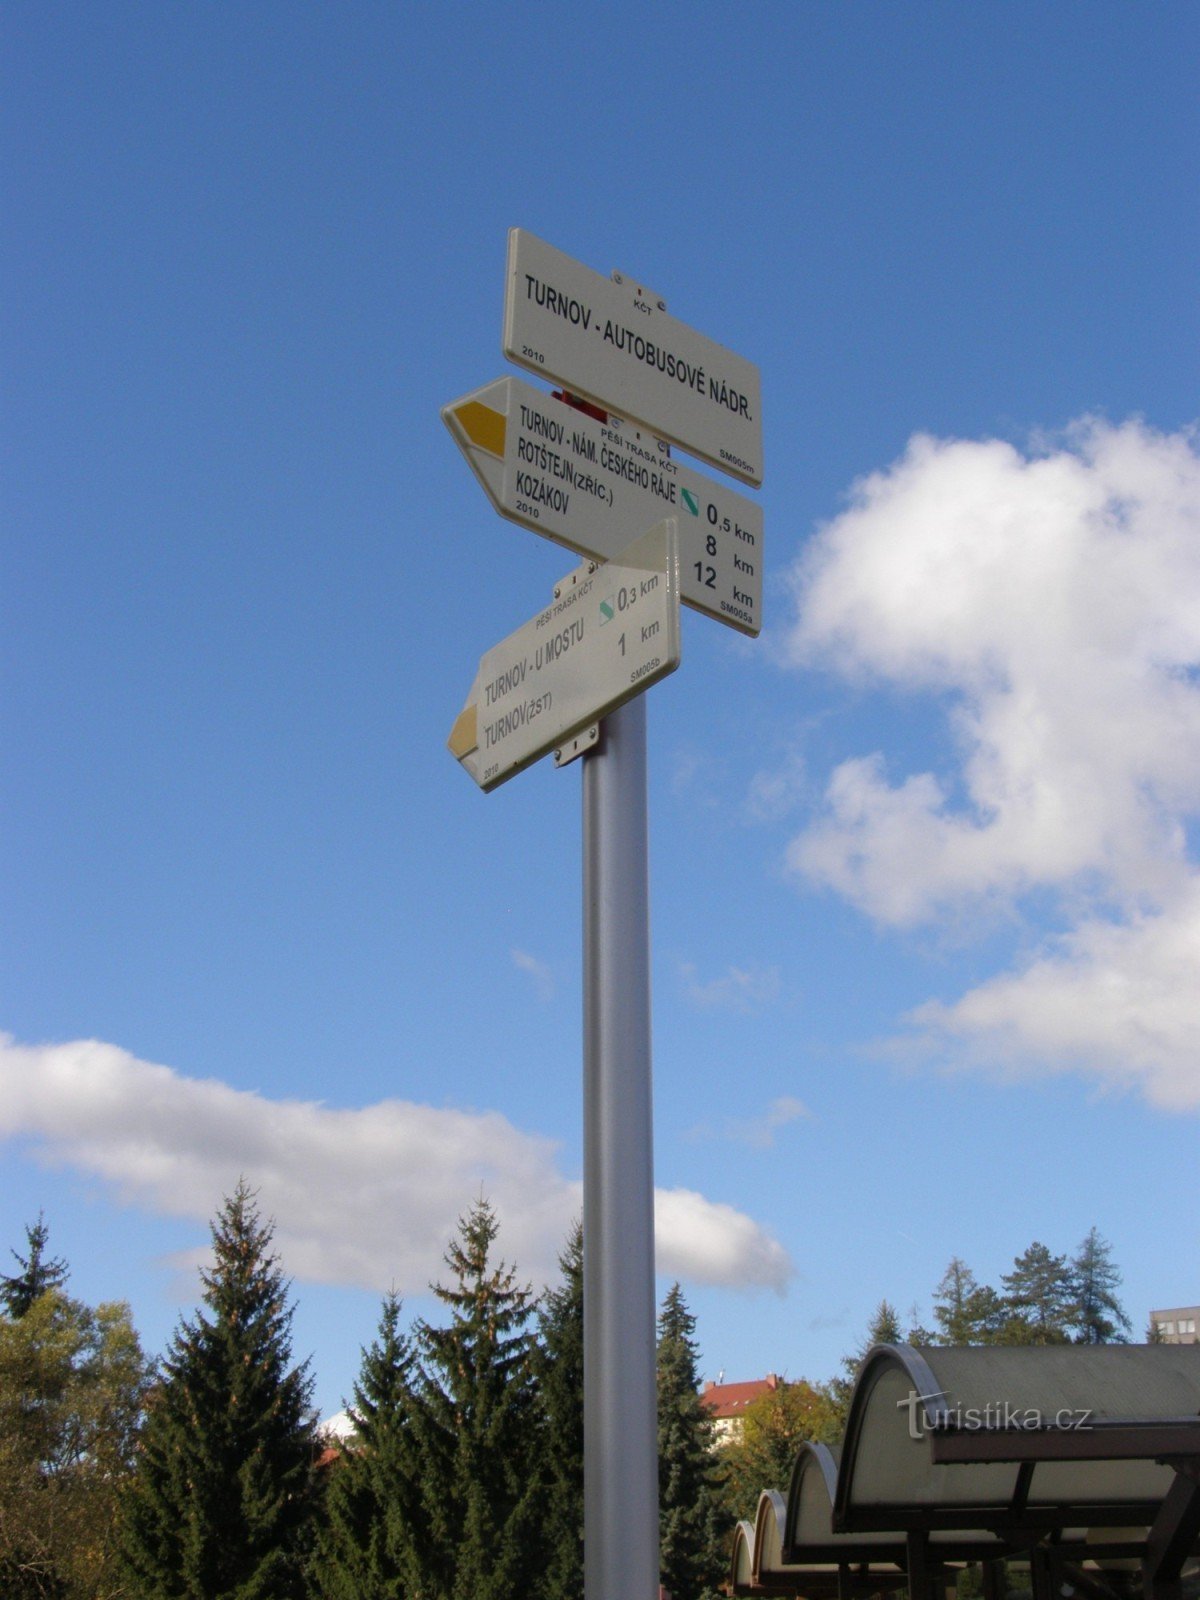 encruzilhada turística Turnov - estação de ônibus